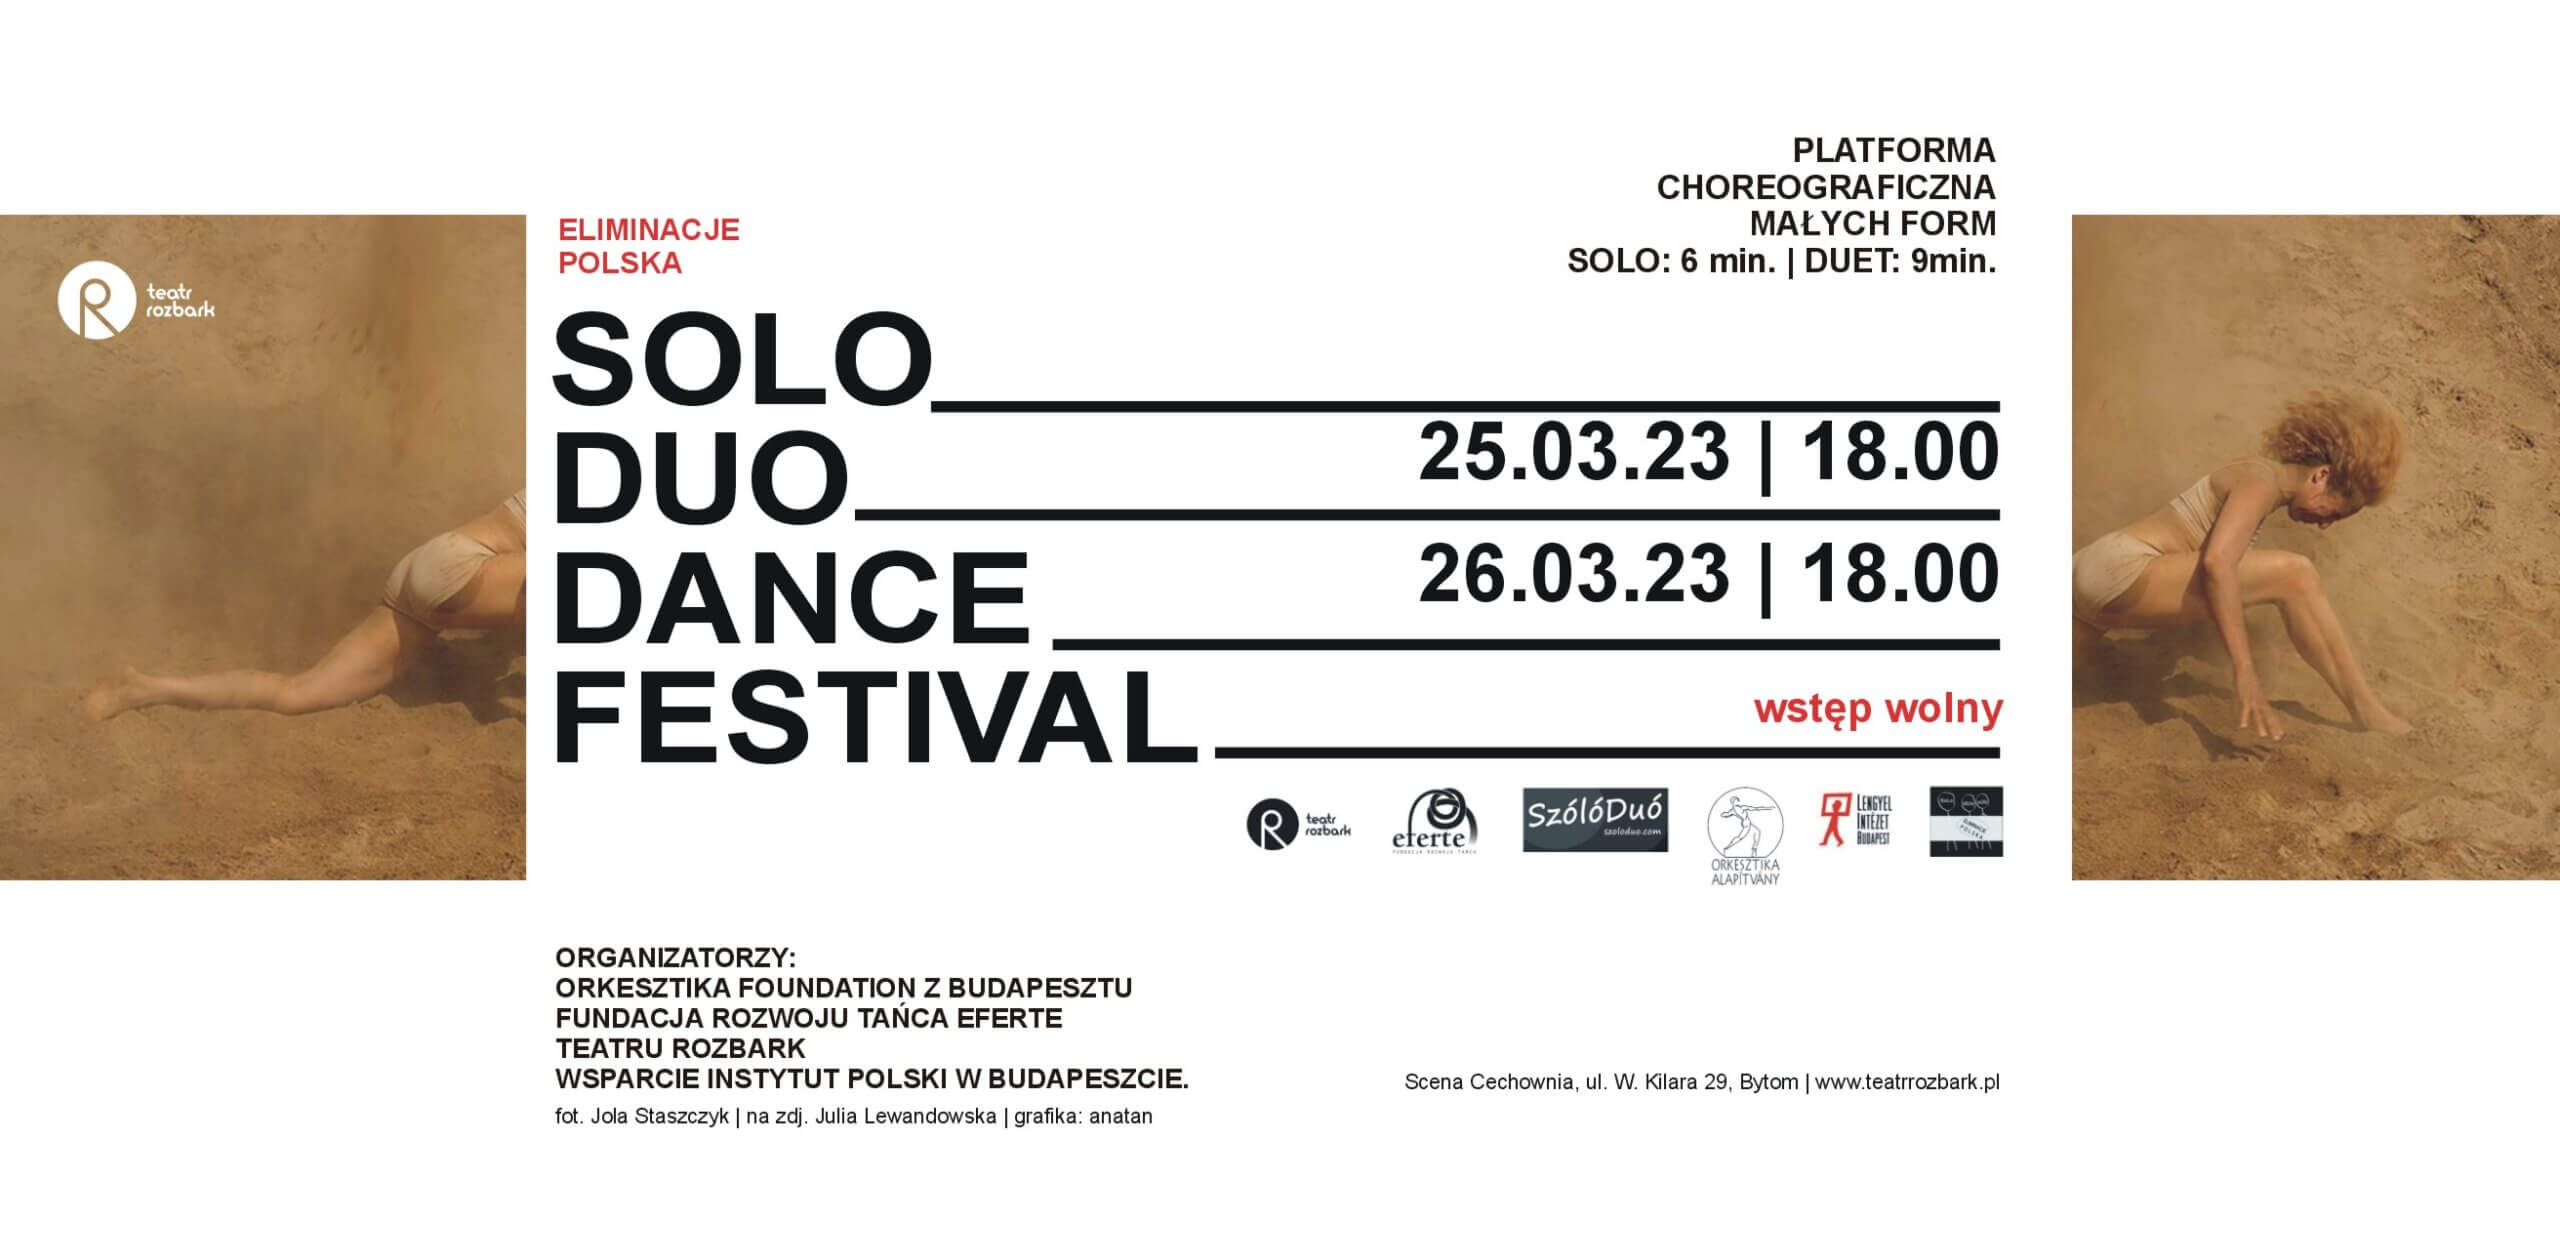 Informacja dotycząca eliminacji do Solo Duo Dance Festiwal